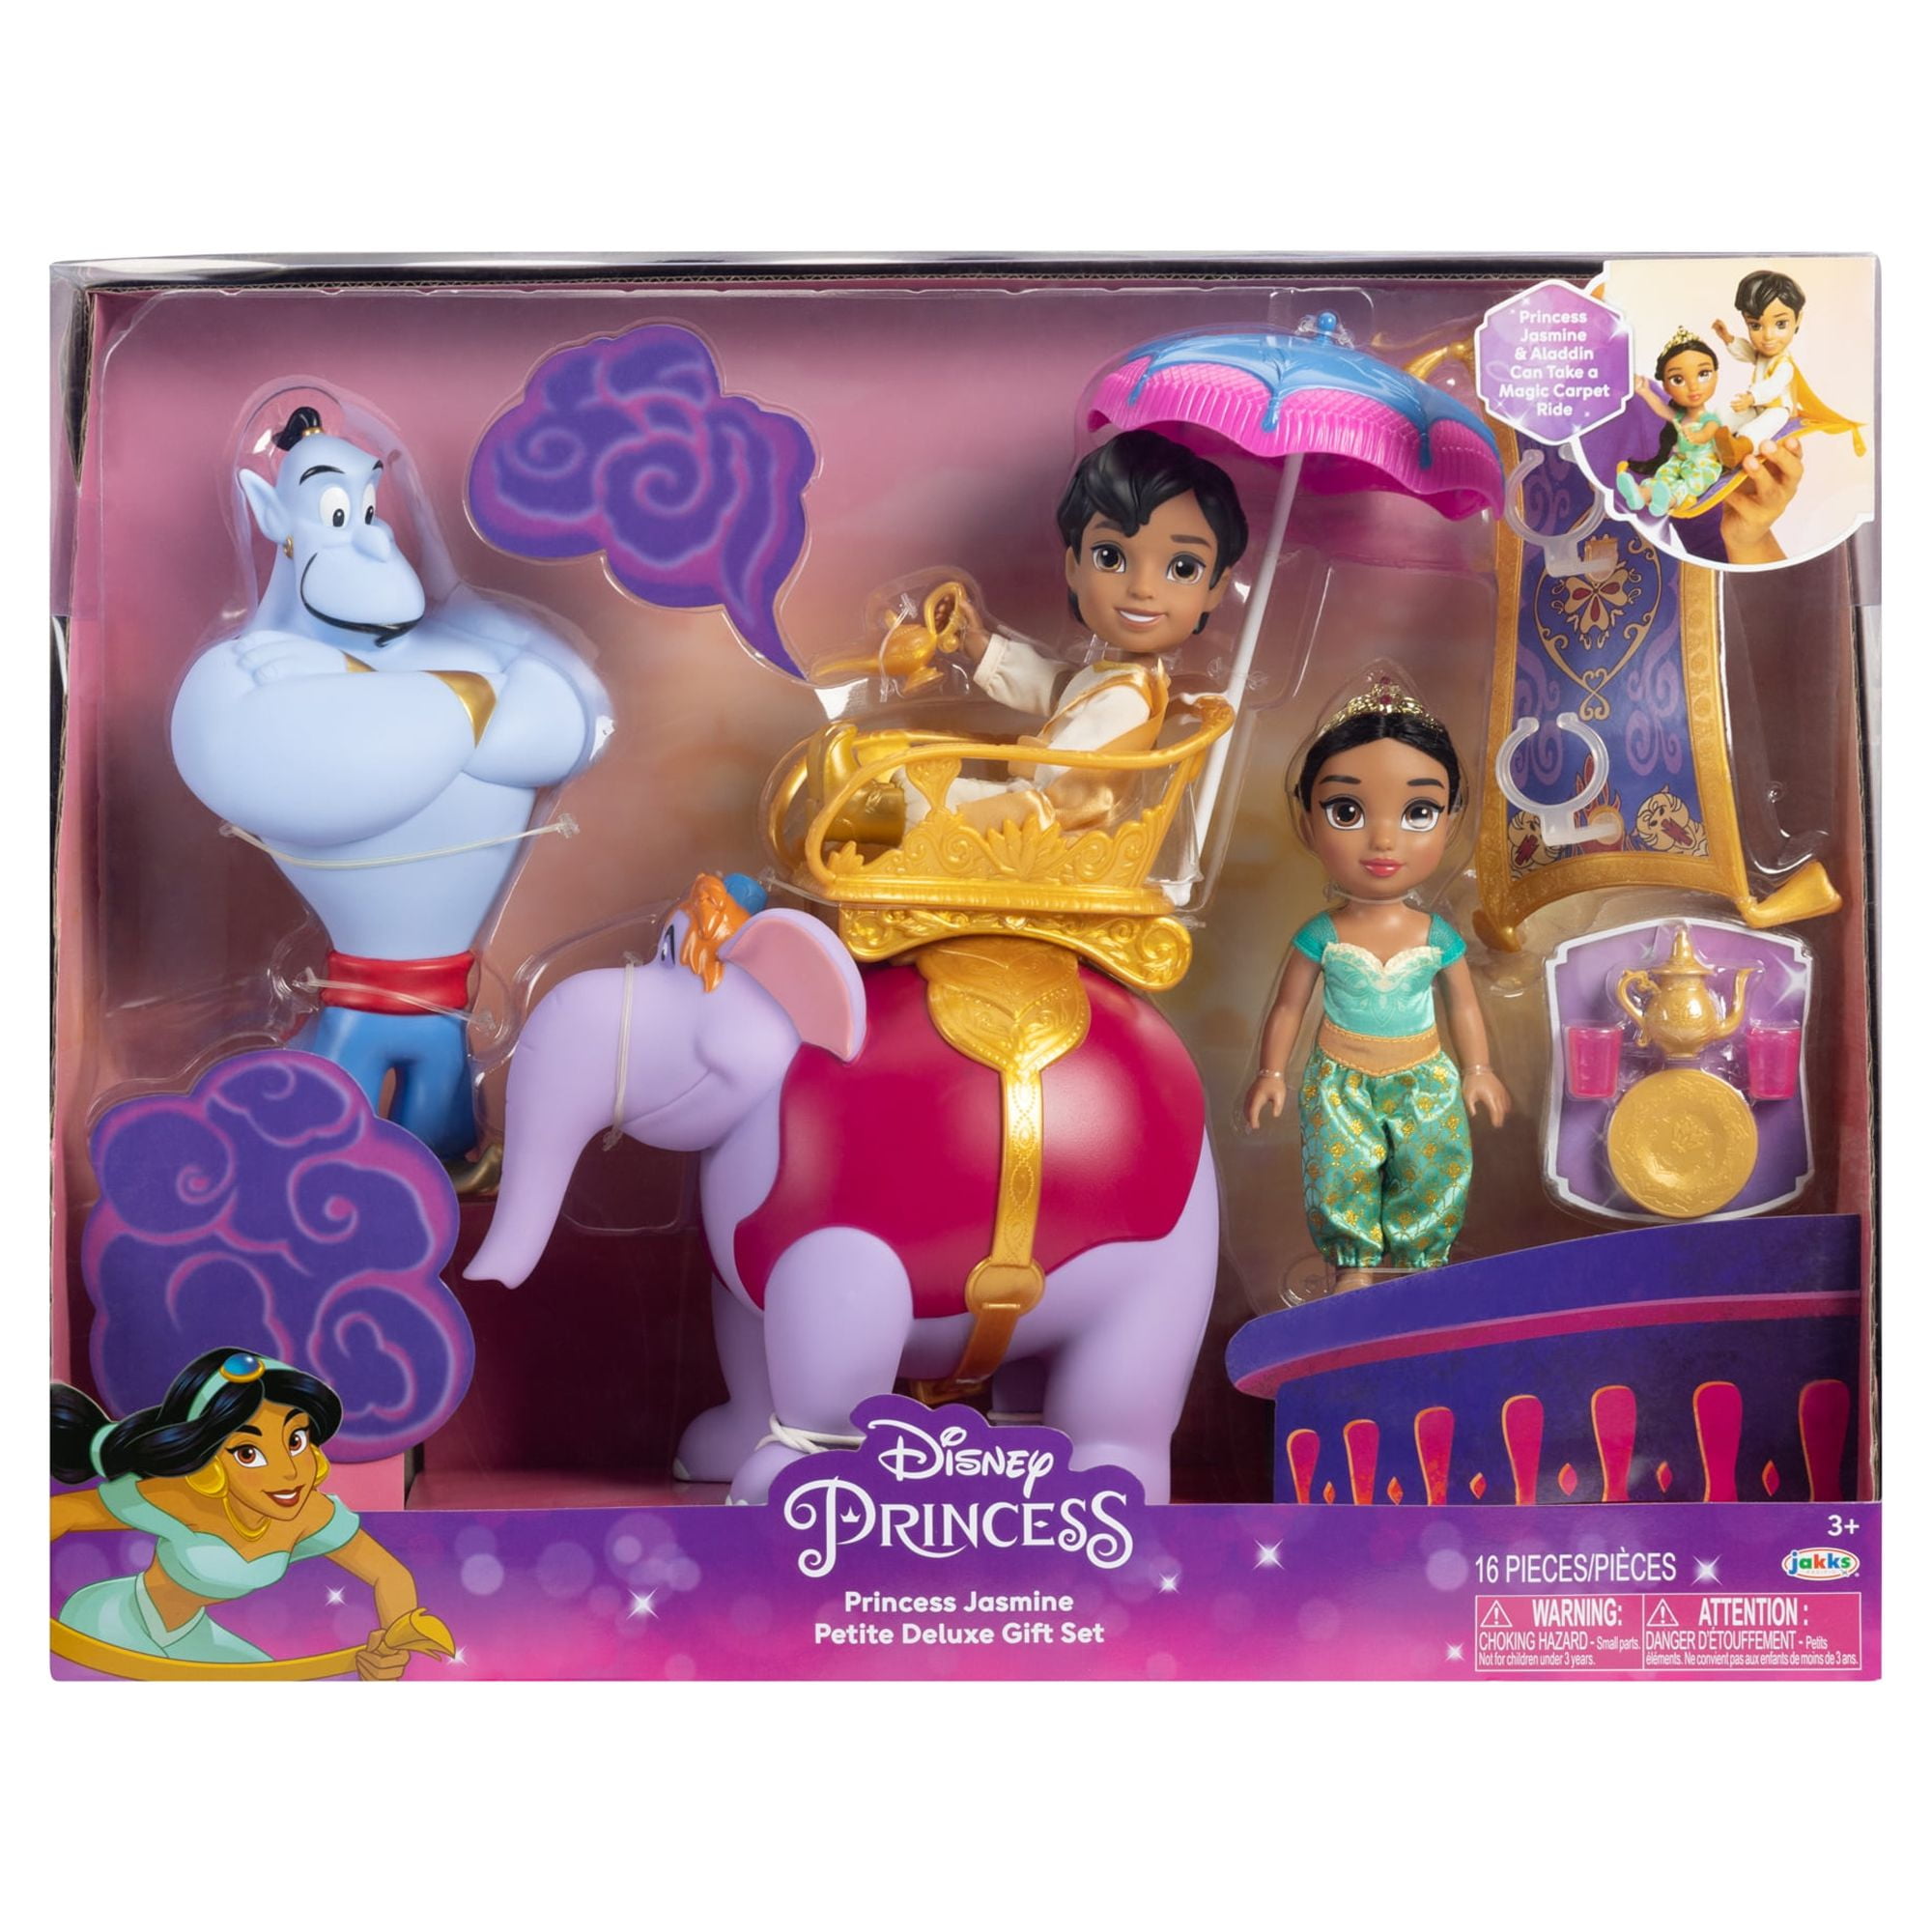 Genie Disney Aladdin (2022)